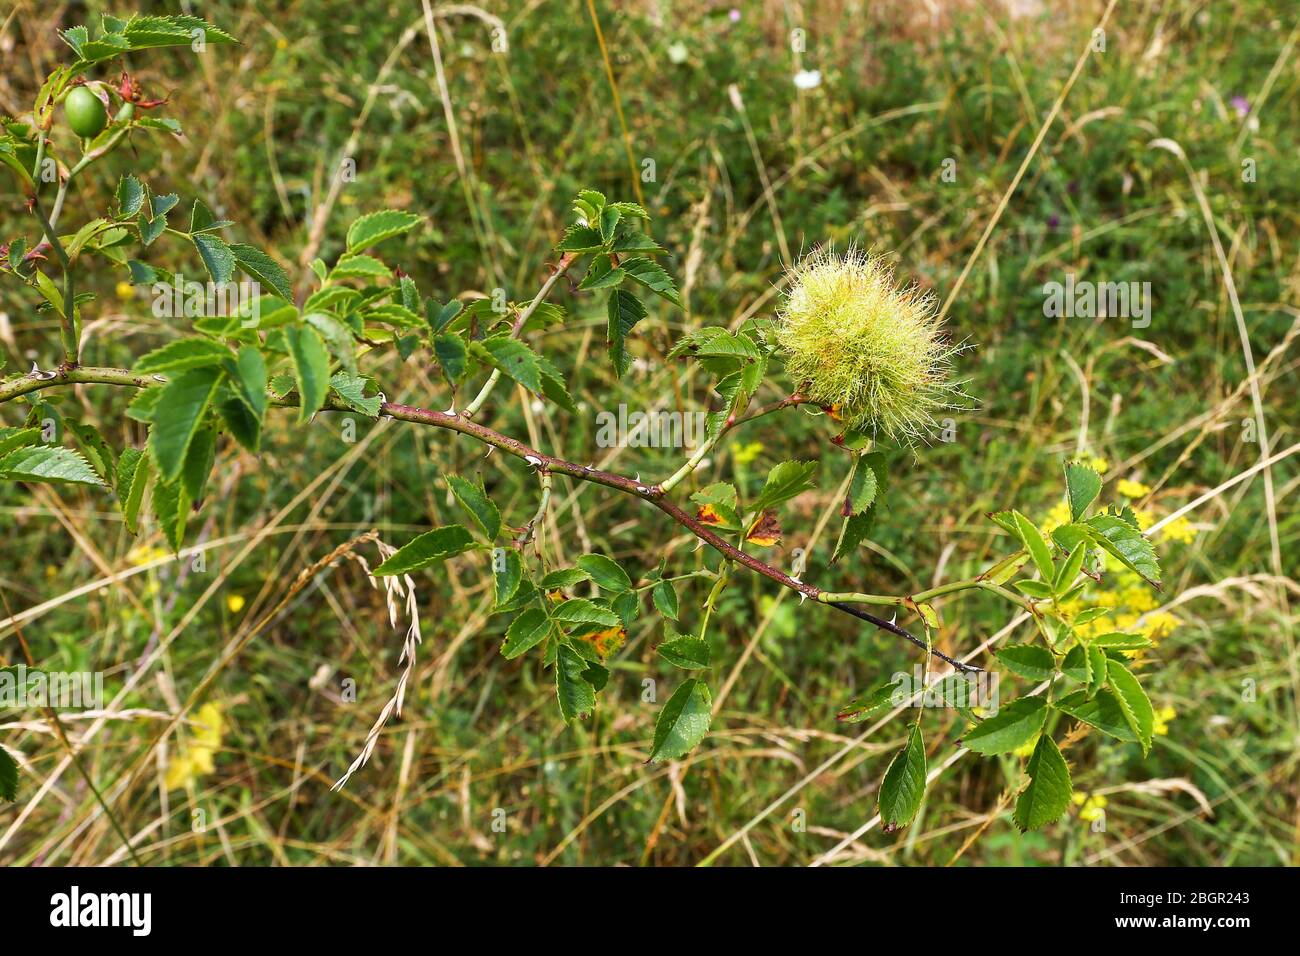 Ein abnormes Wachstum, eine bedeguare Galle, verursacht durch eine Gallwasp auf einer Wildrose, Feldrose (Rosa arvensis) oder Hunderose (Rosa canina), England, Großbritannien Stockfoto